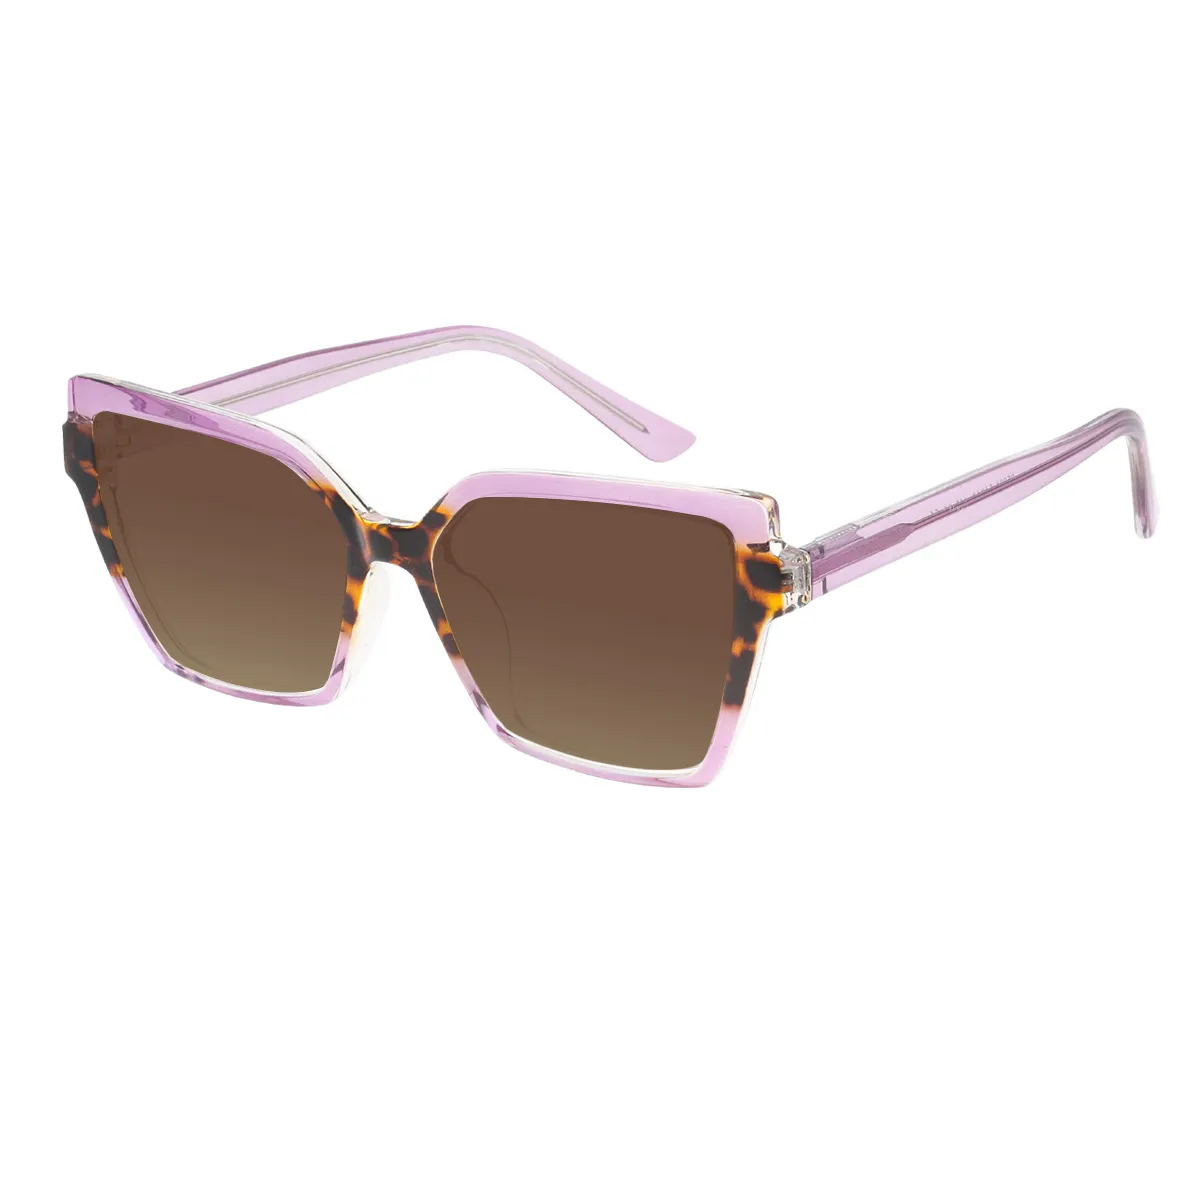 Vesta - Square Purple Sunglasses for Women